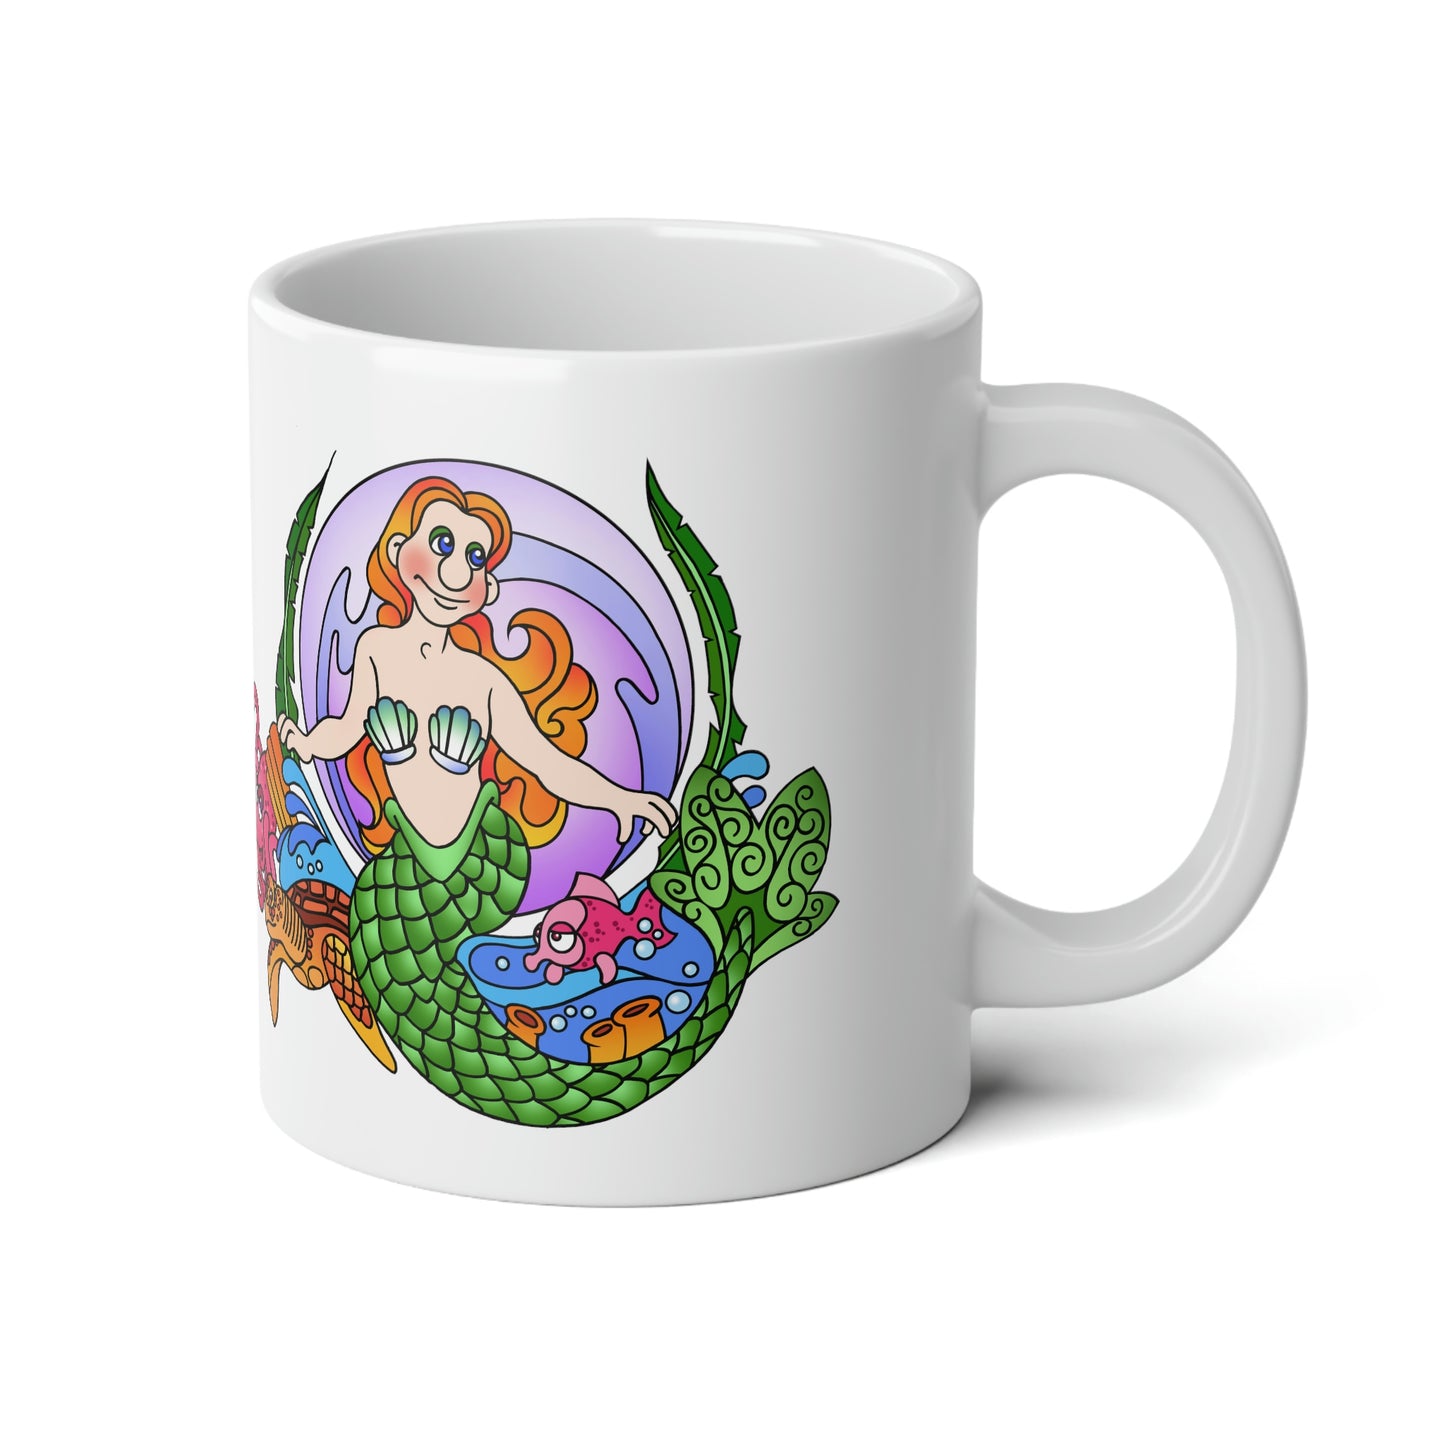 Mermaid Jumbo Mug, 20oz